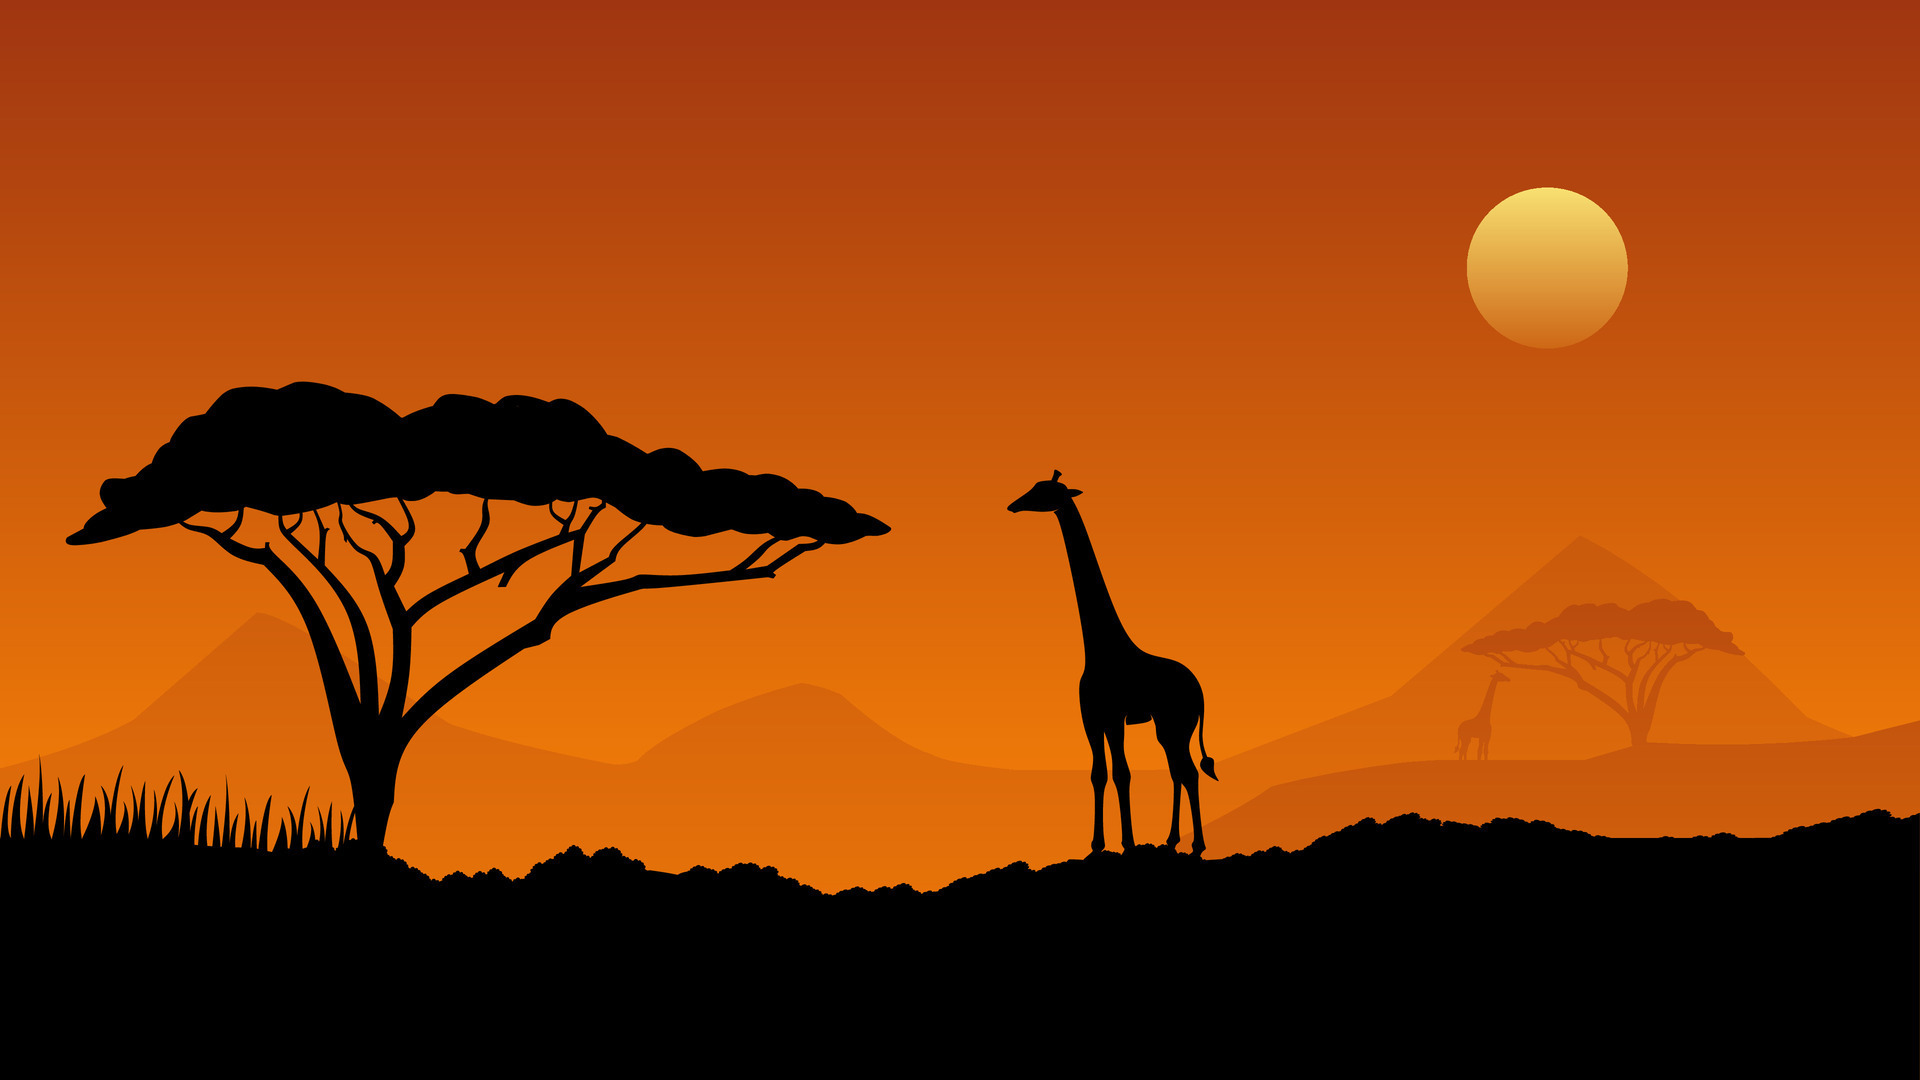 https://static.vecteezy.com/ti/vecteur-libre/p3/25716960-faune-paysage-vecteur-illustration-faune-afrique-savane-de-girafe-avec-africain-arbre-et-le-coucher-du-soleil-ciel-faune-silhouette-paysage-pour-arriere-plan-fond-d-ecran-afficher-ou-atterrissage-page-vectoriel.jpg